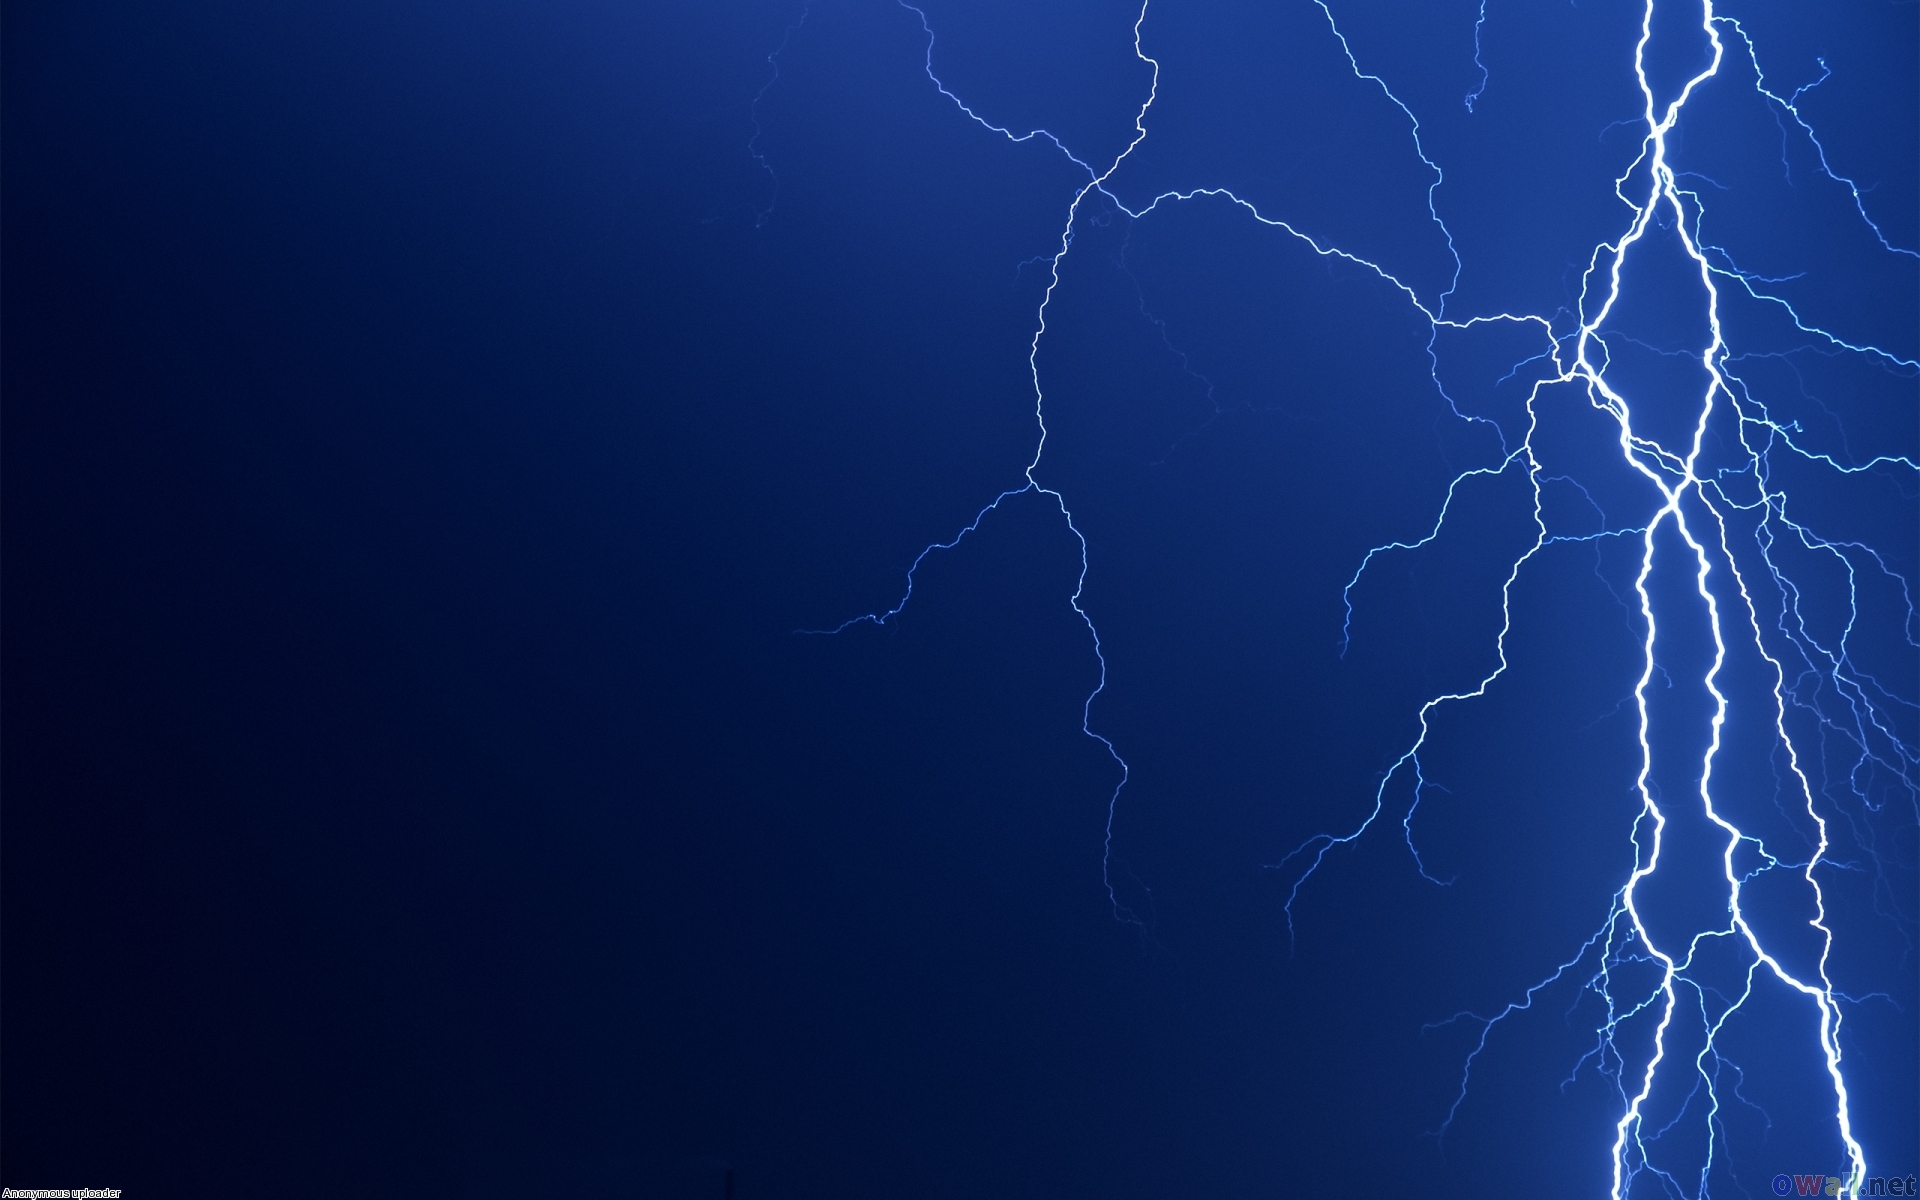 lightning, Dark Sky, skyscapes - desktop wallpaper